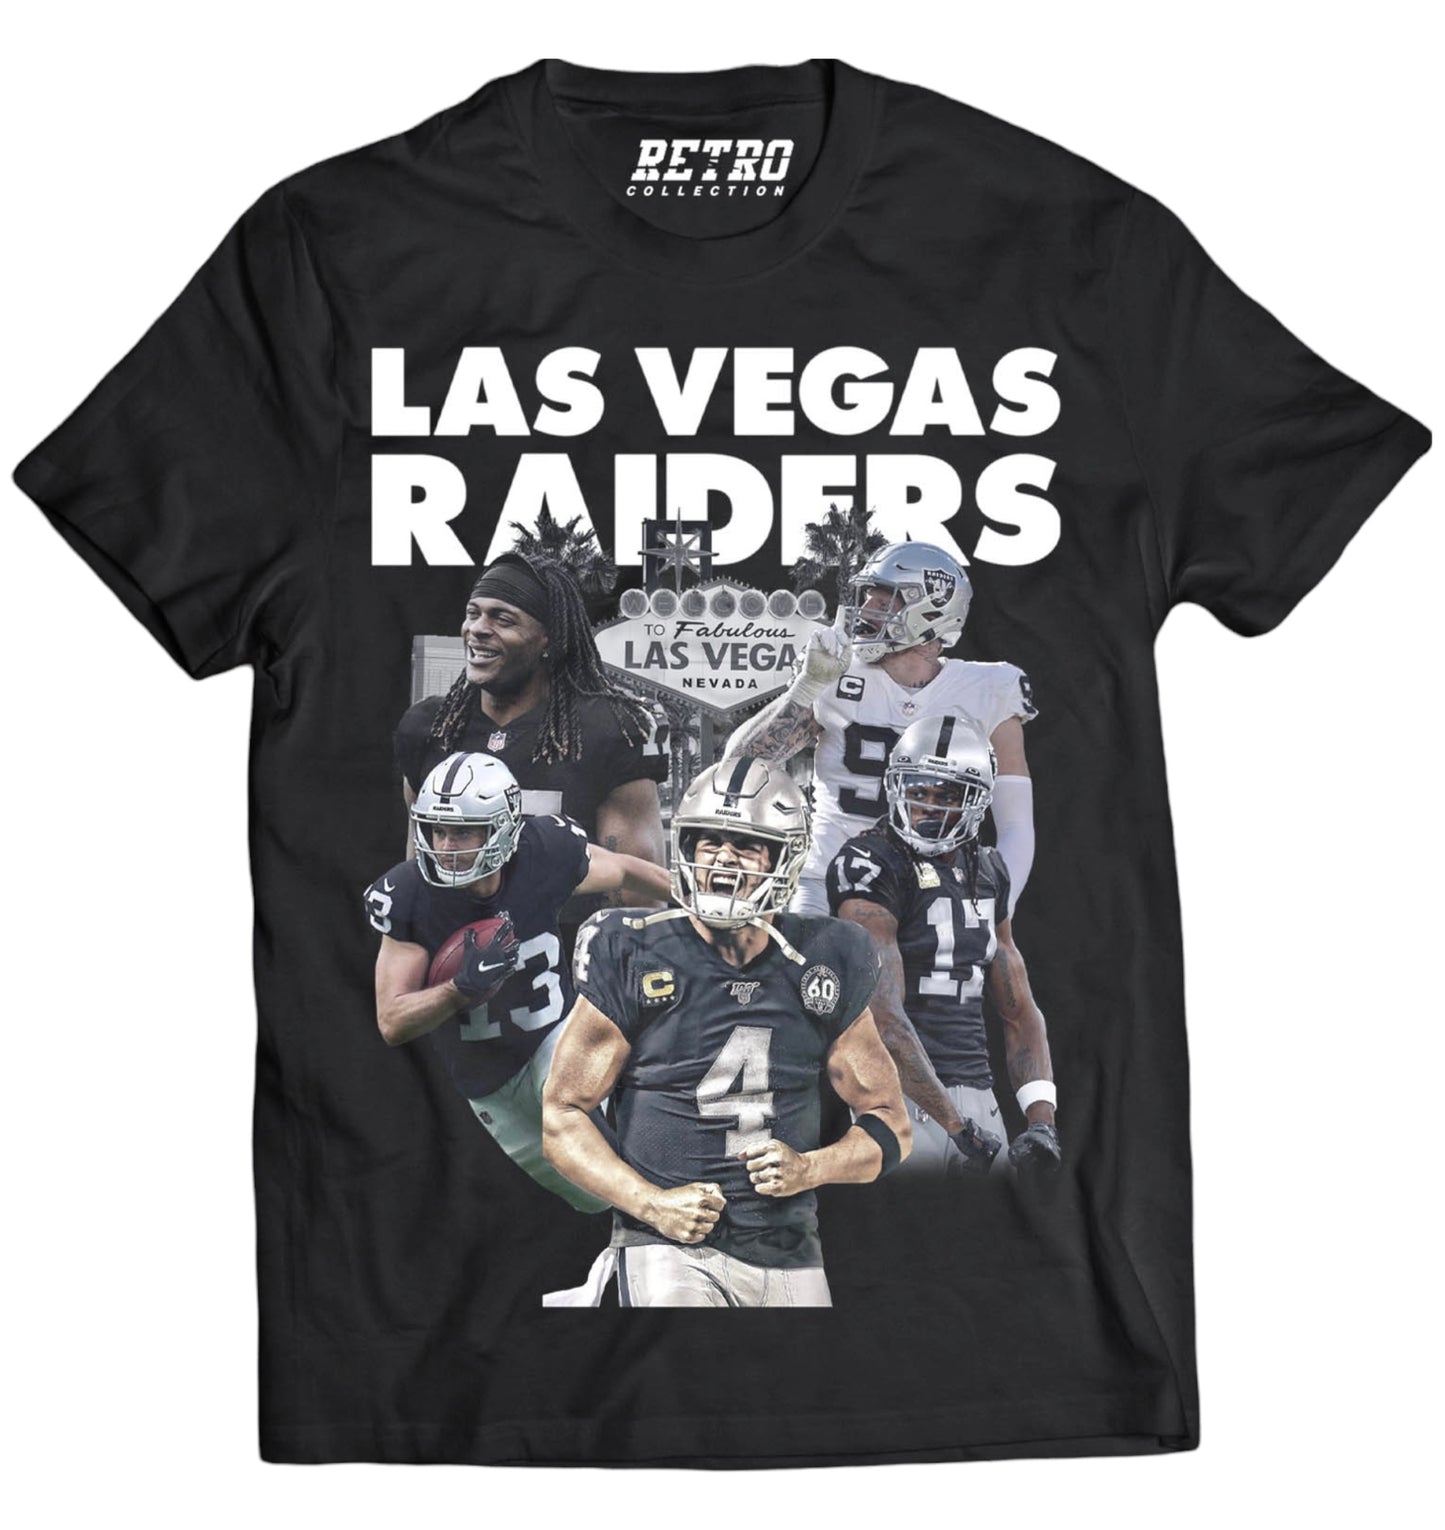 Las Vegas Raiders Tribute Shirt (Black)